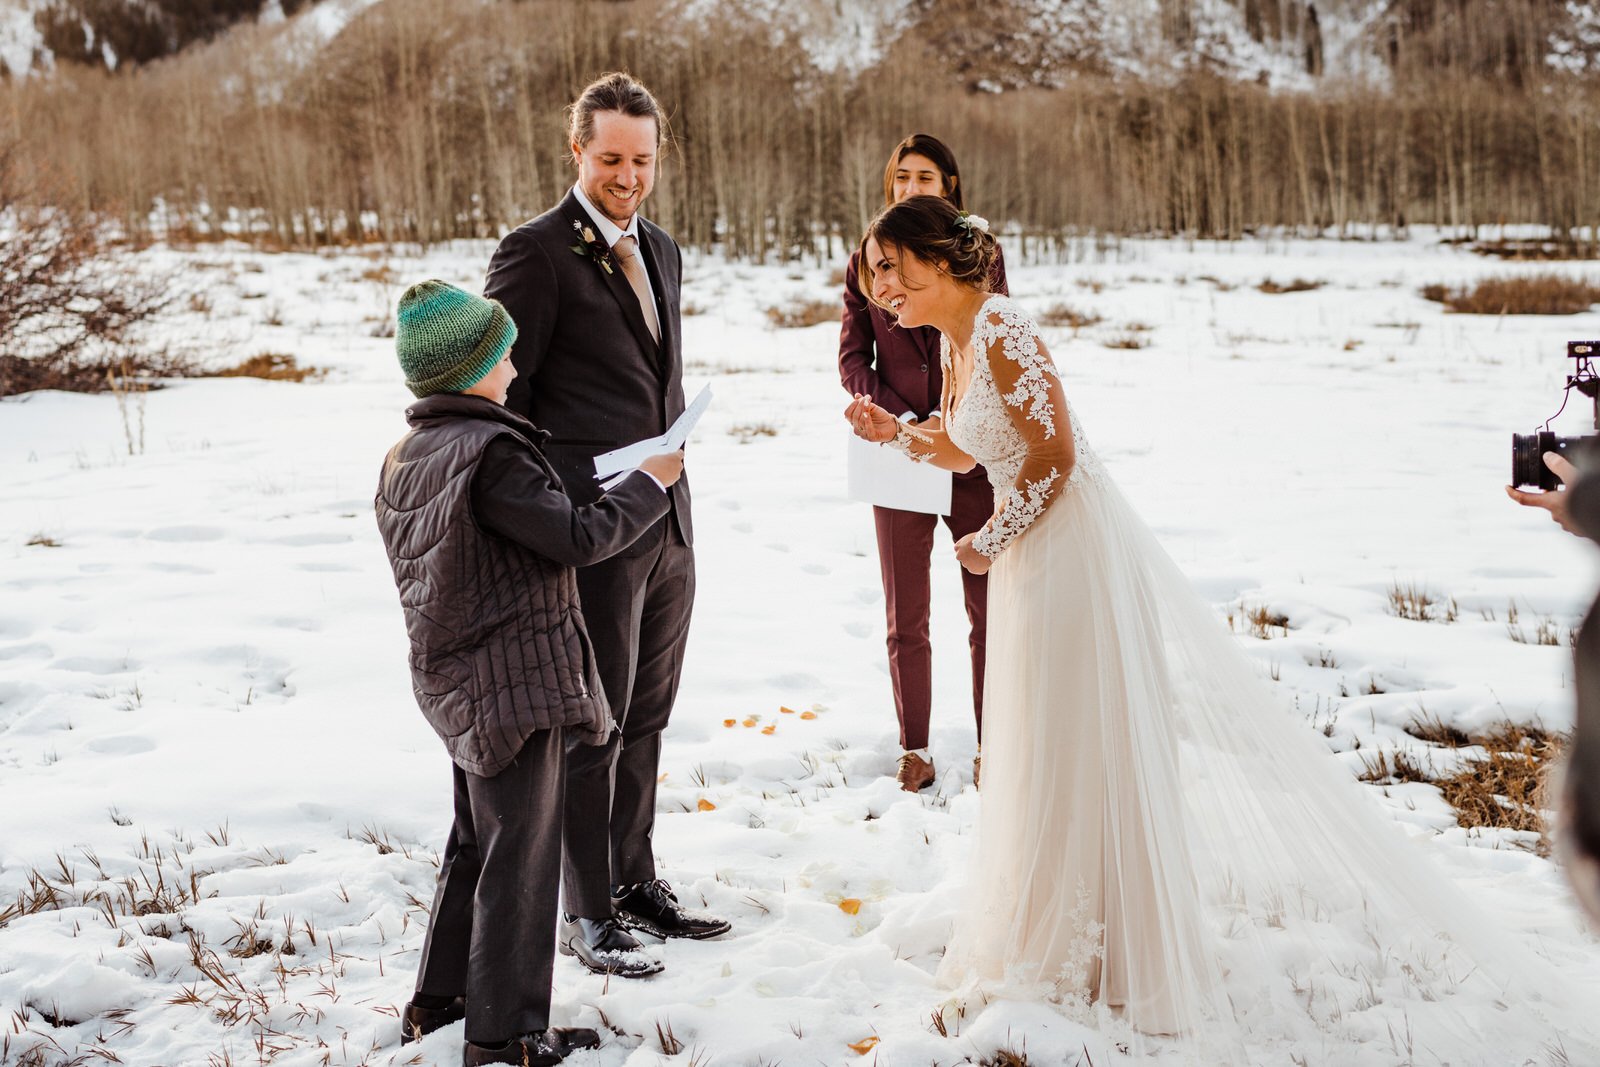 Colorado-Elopement-Snowy-Wedding-Ceremony8.jpg